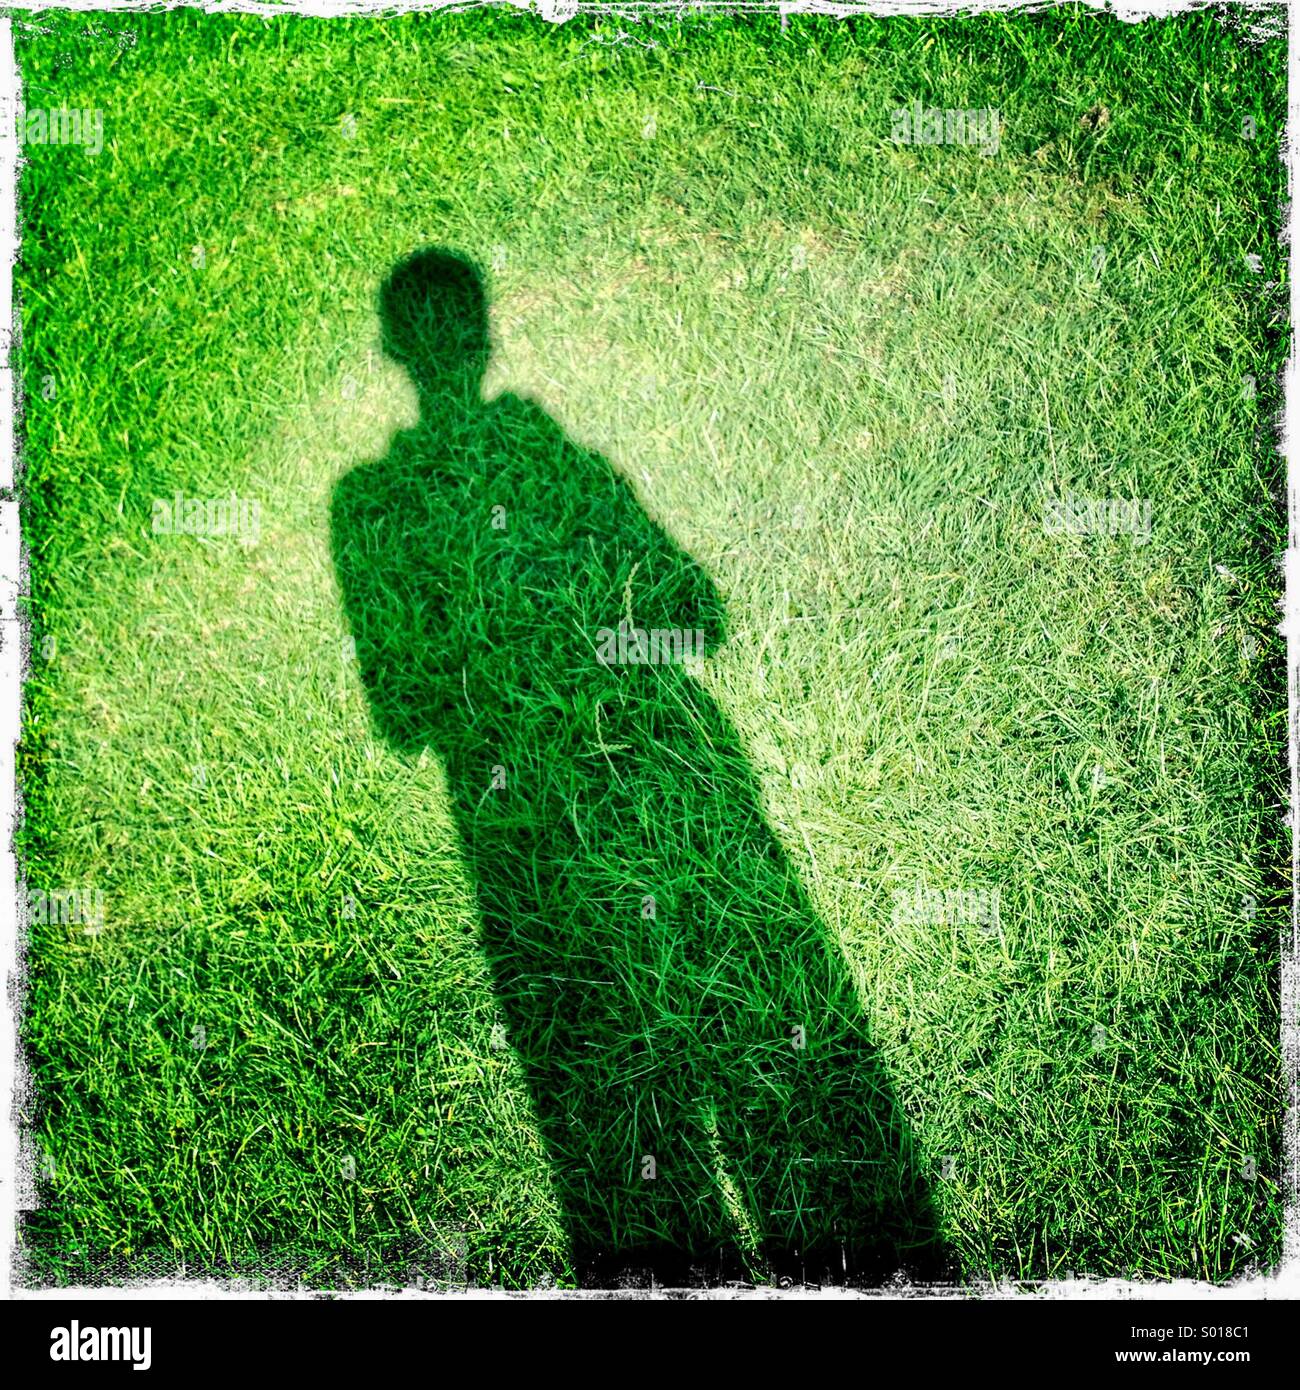 Schatten der Person auf dem Rasen. Selfie, London, UK. Hipstamatic, iPhone. Stockfoto